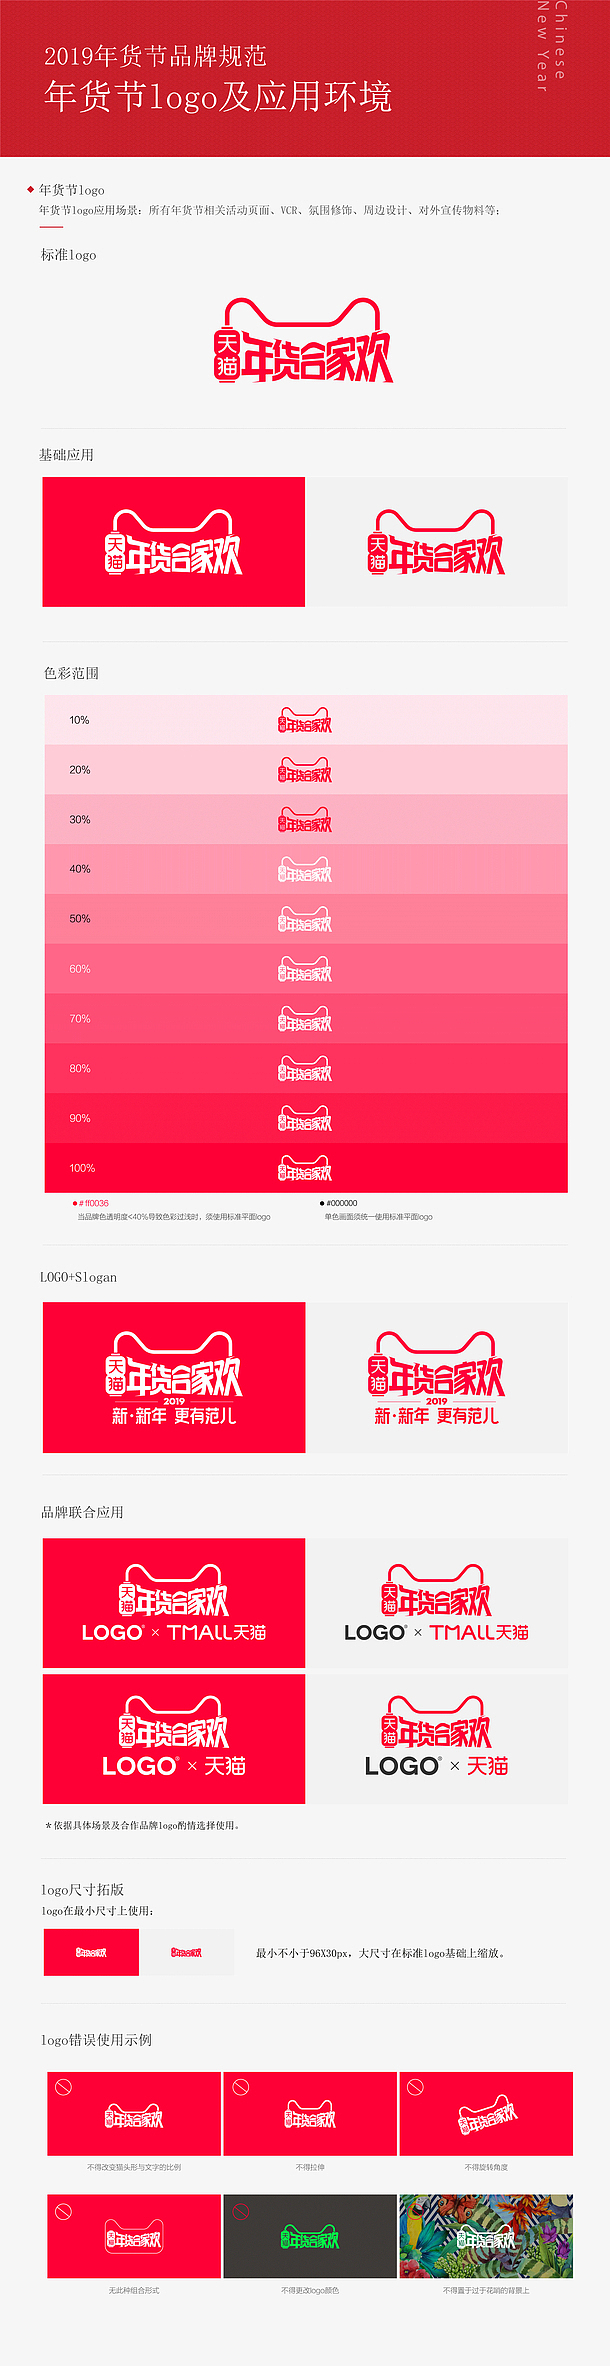 2019天猫年货节logo规范